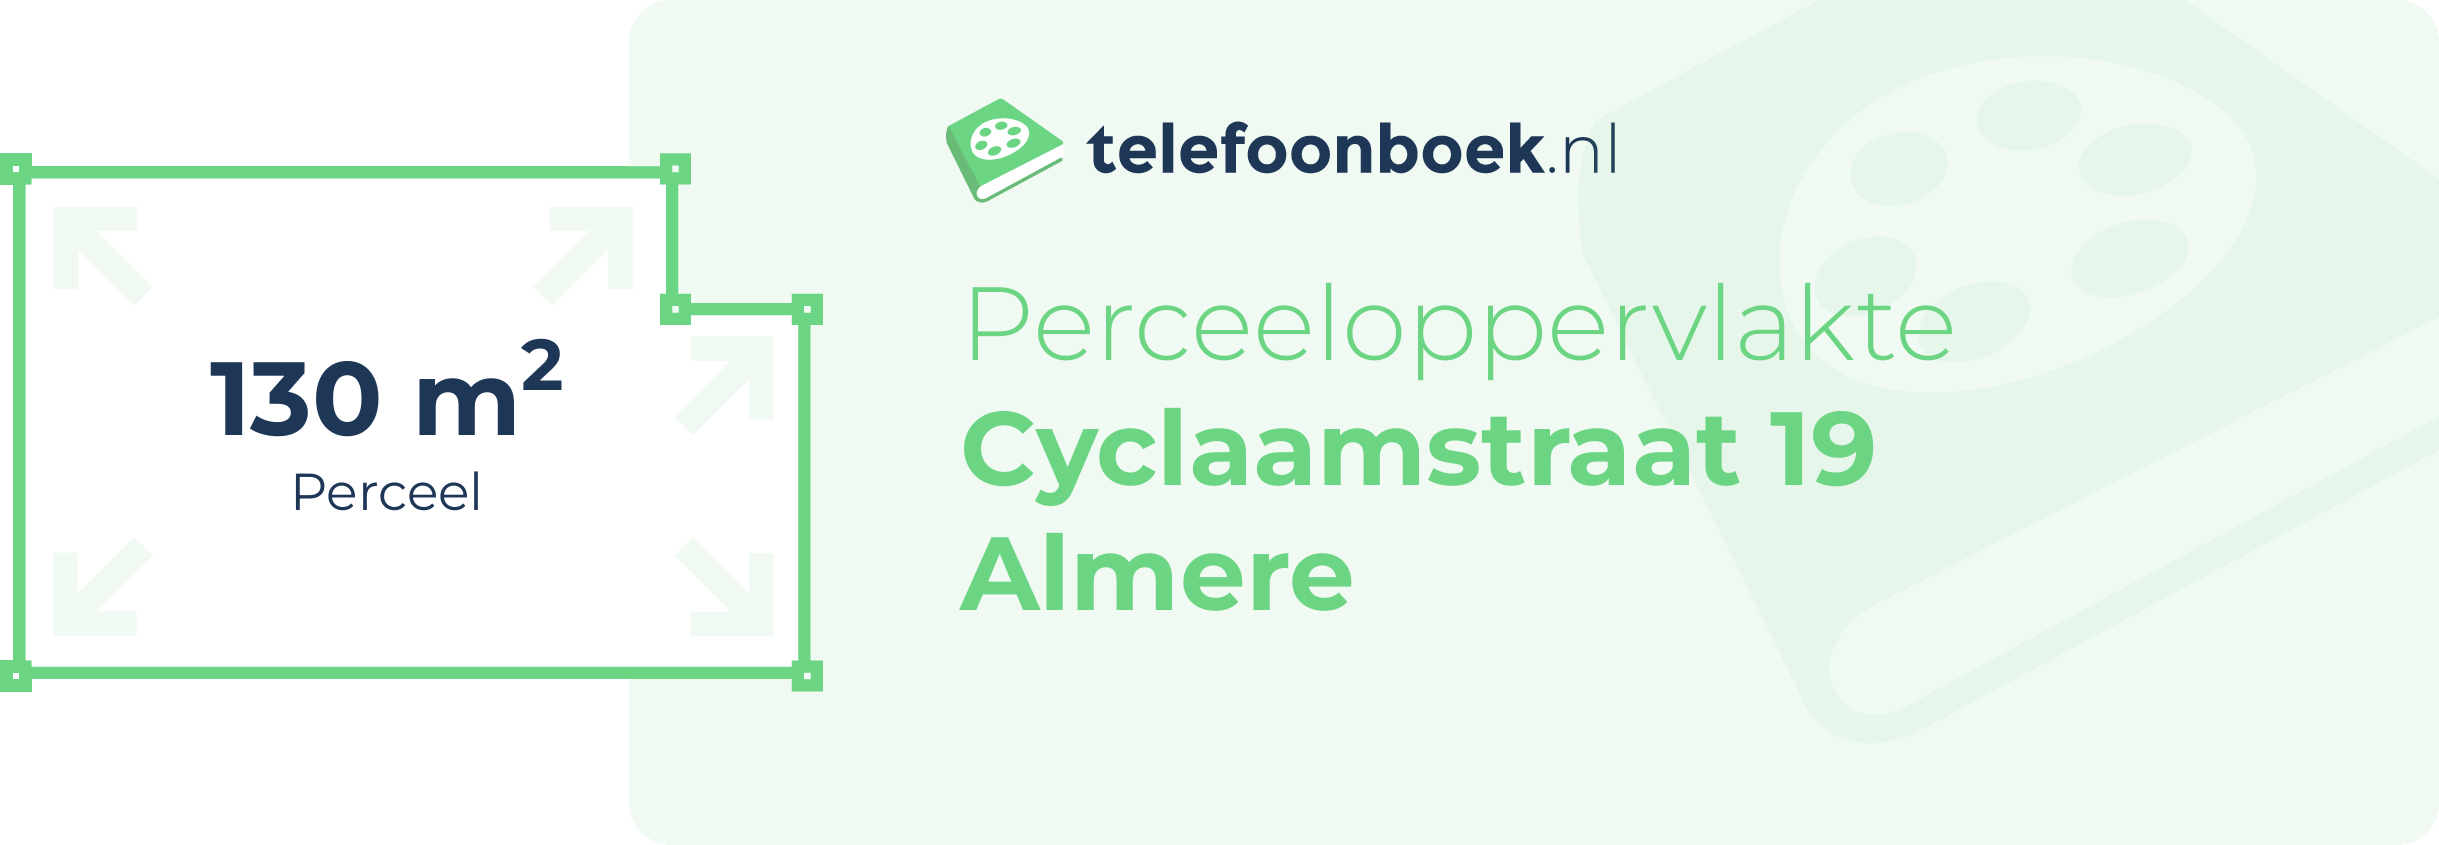 Perceeloppervlakte Cyclaamstraat 19 Almere